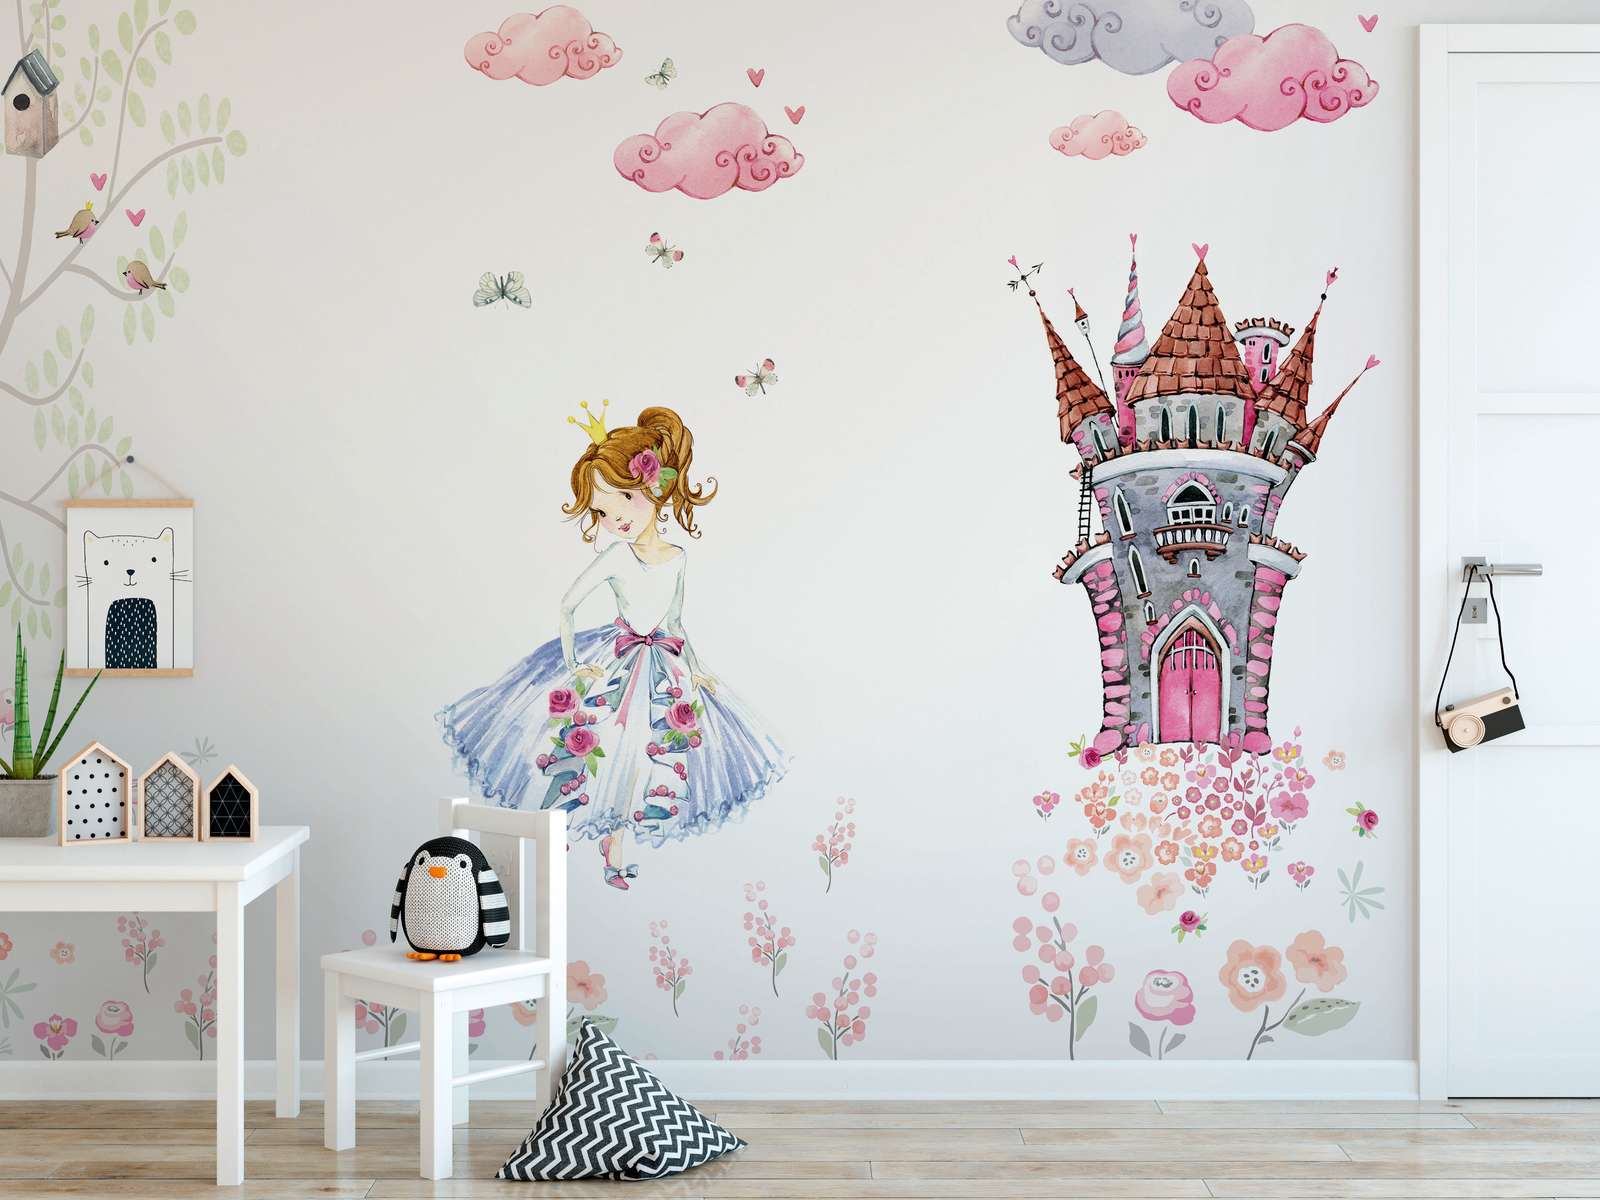             Papel pintado para la habitación de los niños "Princesa en el jardín del castillo" - rosa, blanco, verde
        